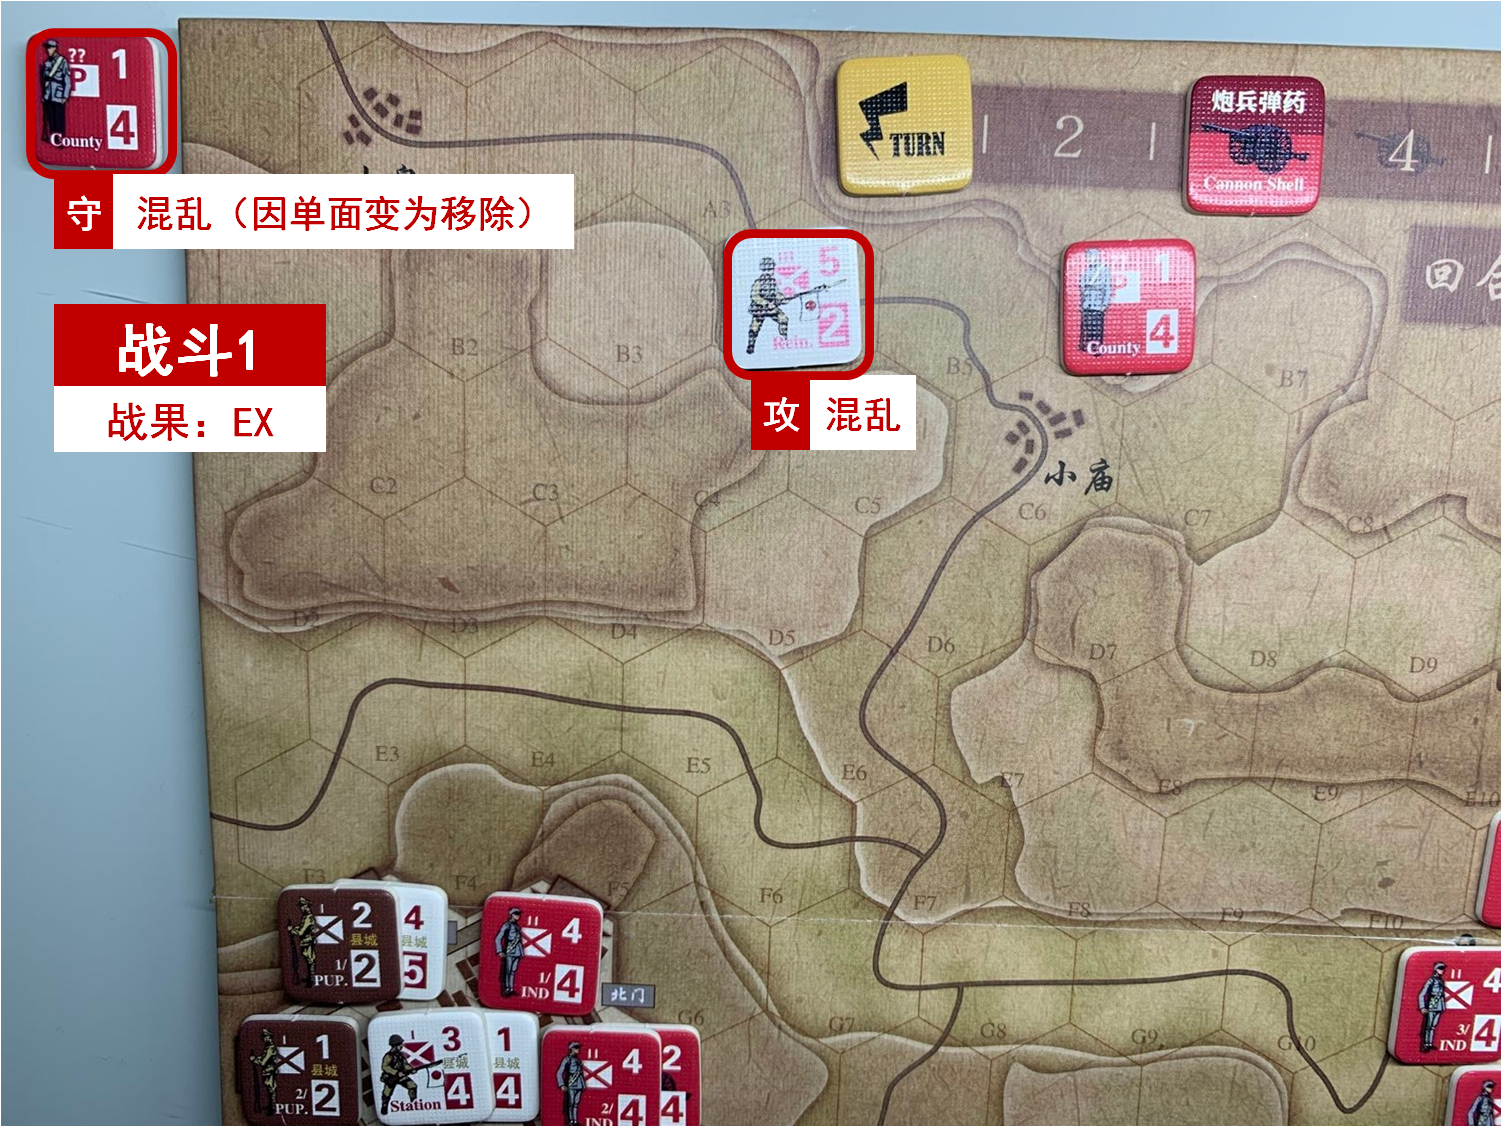 第一回合 日方戰鬥階段 戰鬥1 戰鬥結果